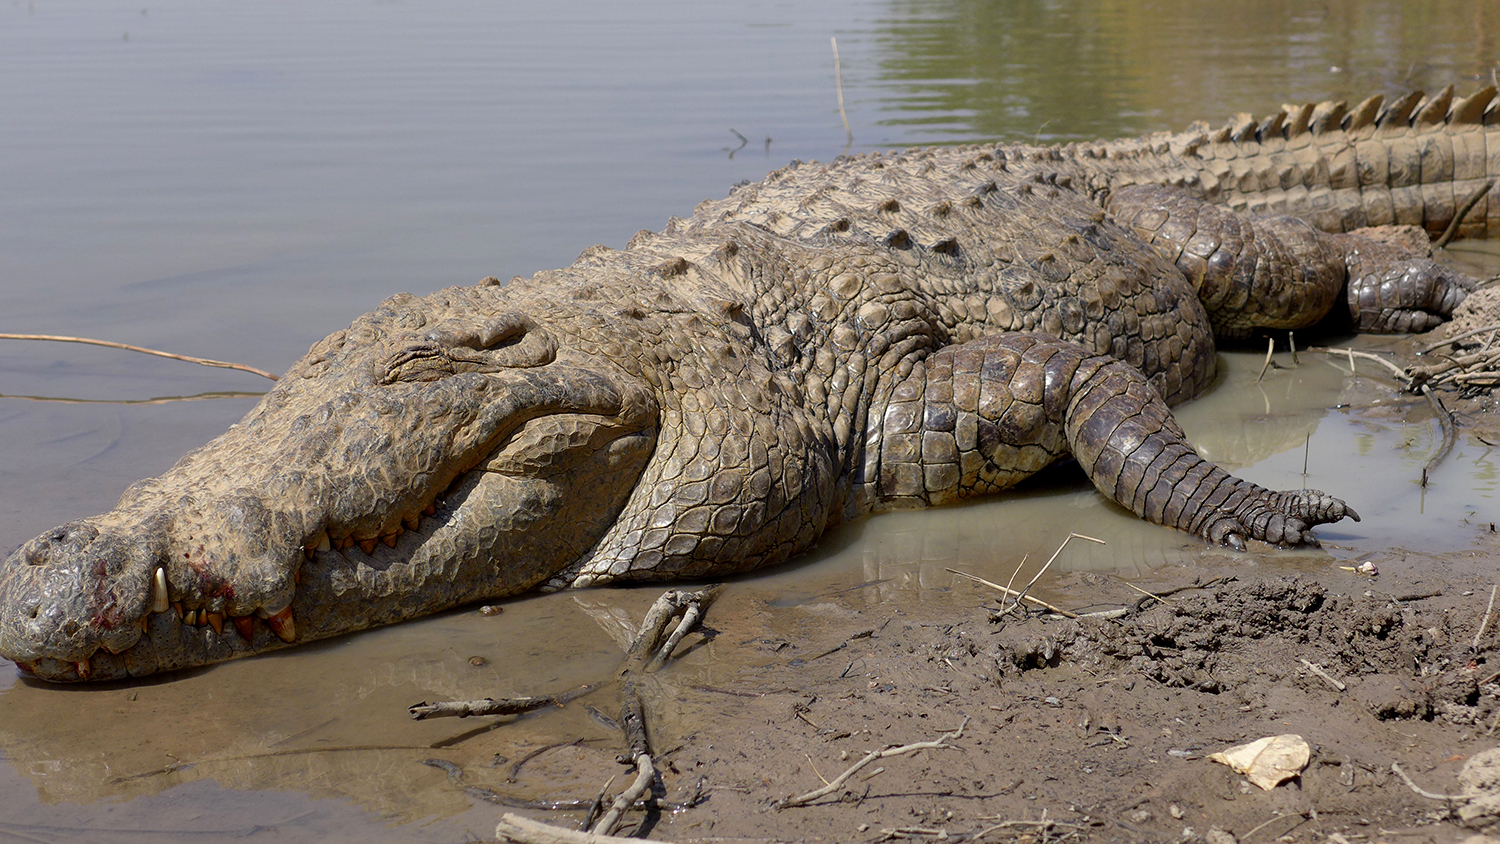 Les crocodiles de Bazoulé ont l’air très dociles. Par moments, ils semblent irréels et taillés dans la pierre. 